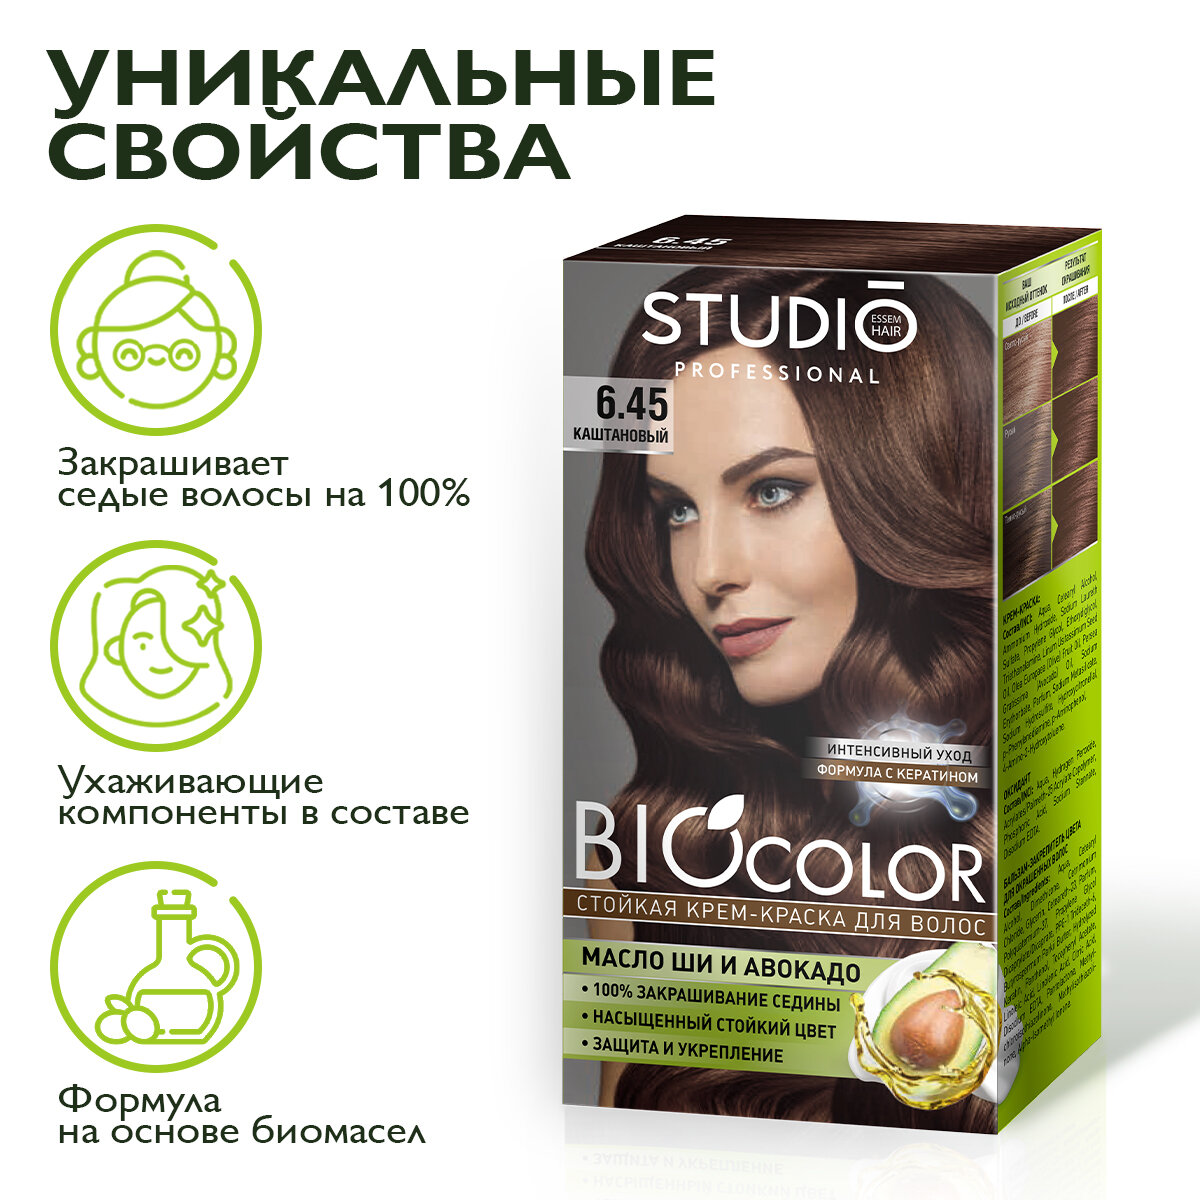 Studio Biocolor Краска для волос 6.45 Каштановый 50/50/15 мл - 2 штуки